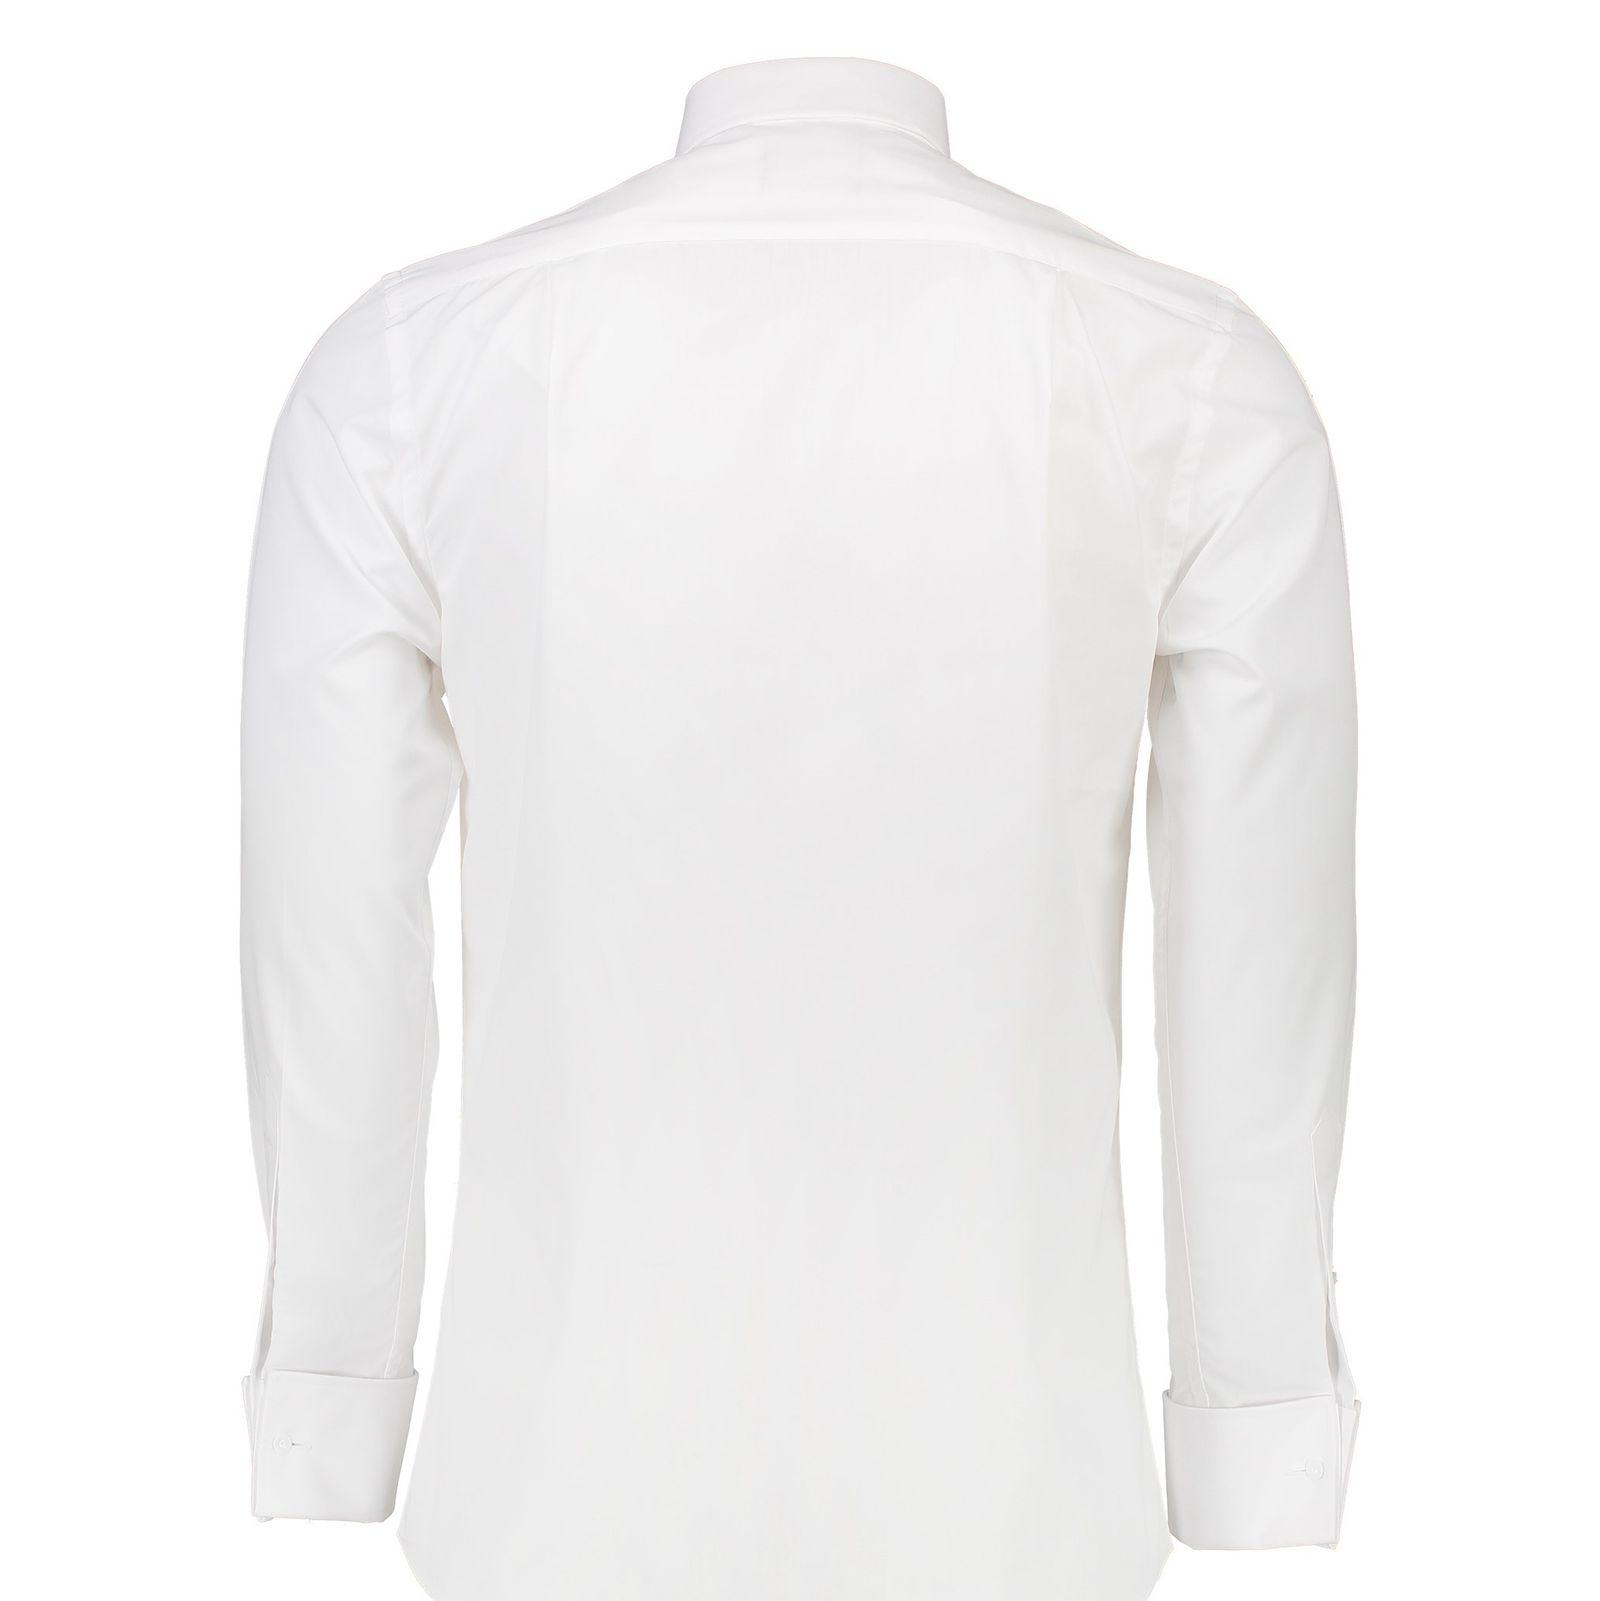 پیراهن رسمی مردانه - کالکشن - سفيد - 2